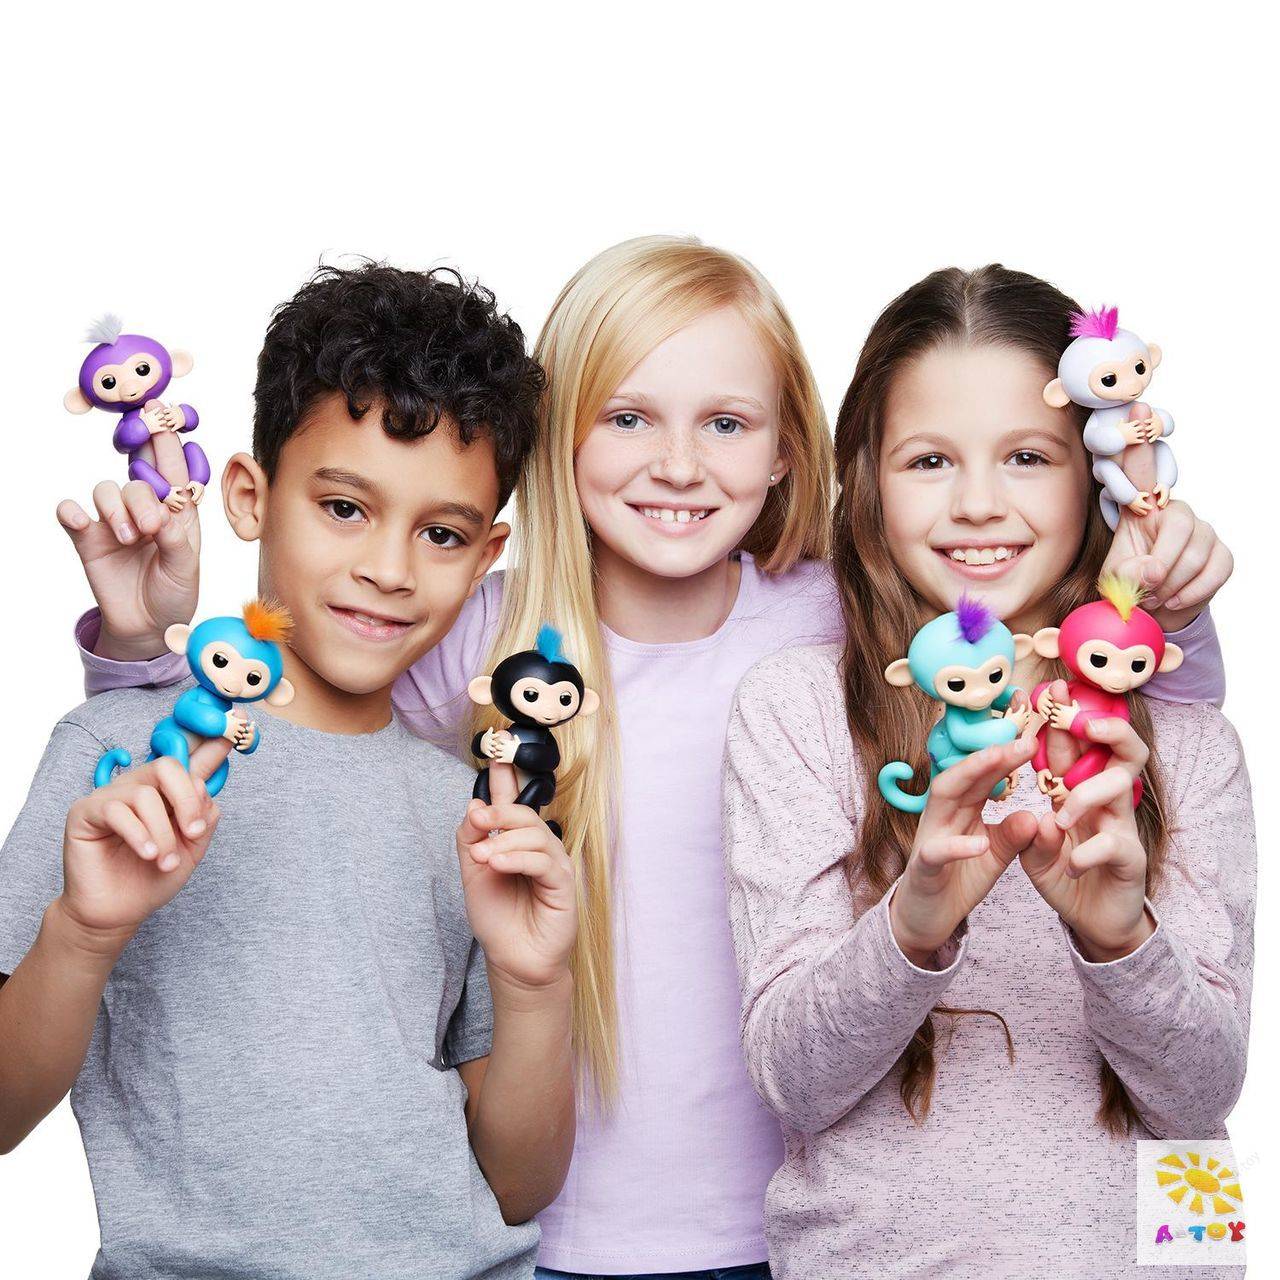 Have new toys. Fingerlings, 3701a интерактивная обезьянка Финн (черная), 12см. Fingerlings, 3704a интерактивная обезьянка Миа (фиолетовая), 12см. Модные игрушки для детей.